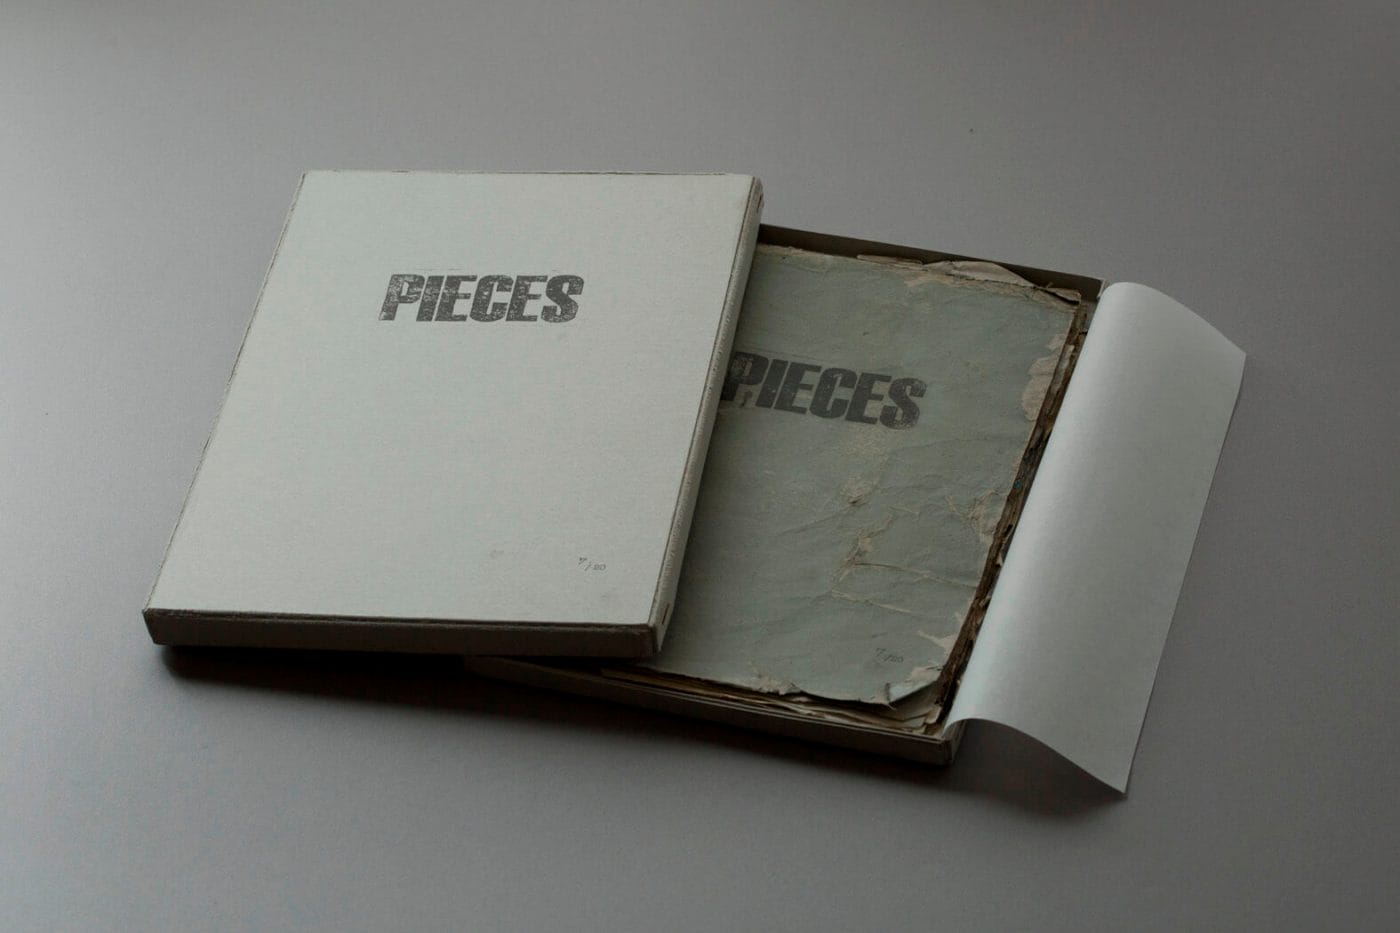 写真や本の概念を覆す試みを続ける写真家・山田和幸の作品展「PIECES」、blackbird booksにて。自ら製作したアートブック『PIECES』と原画を展示販売。